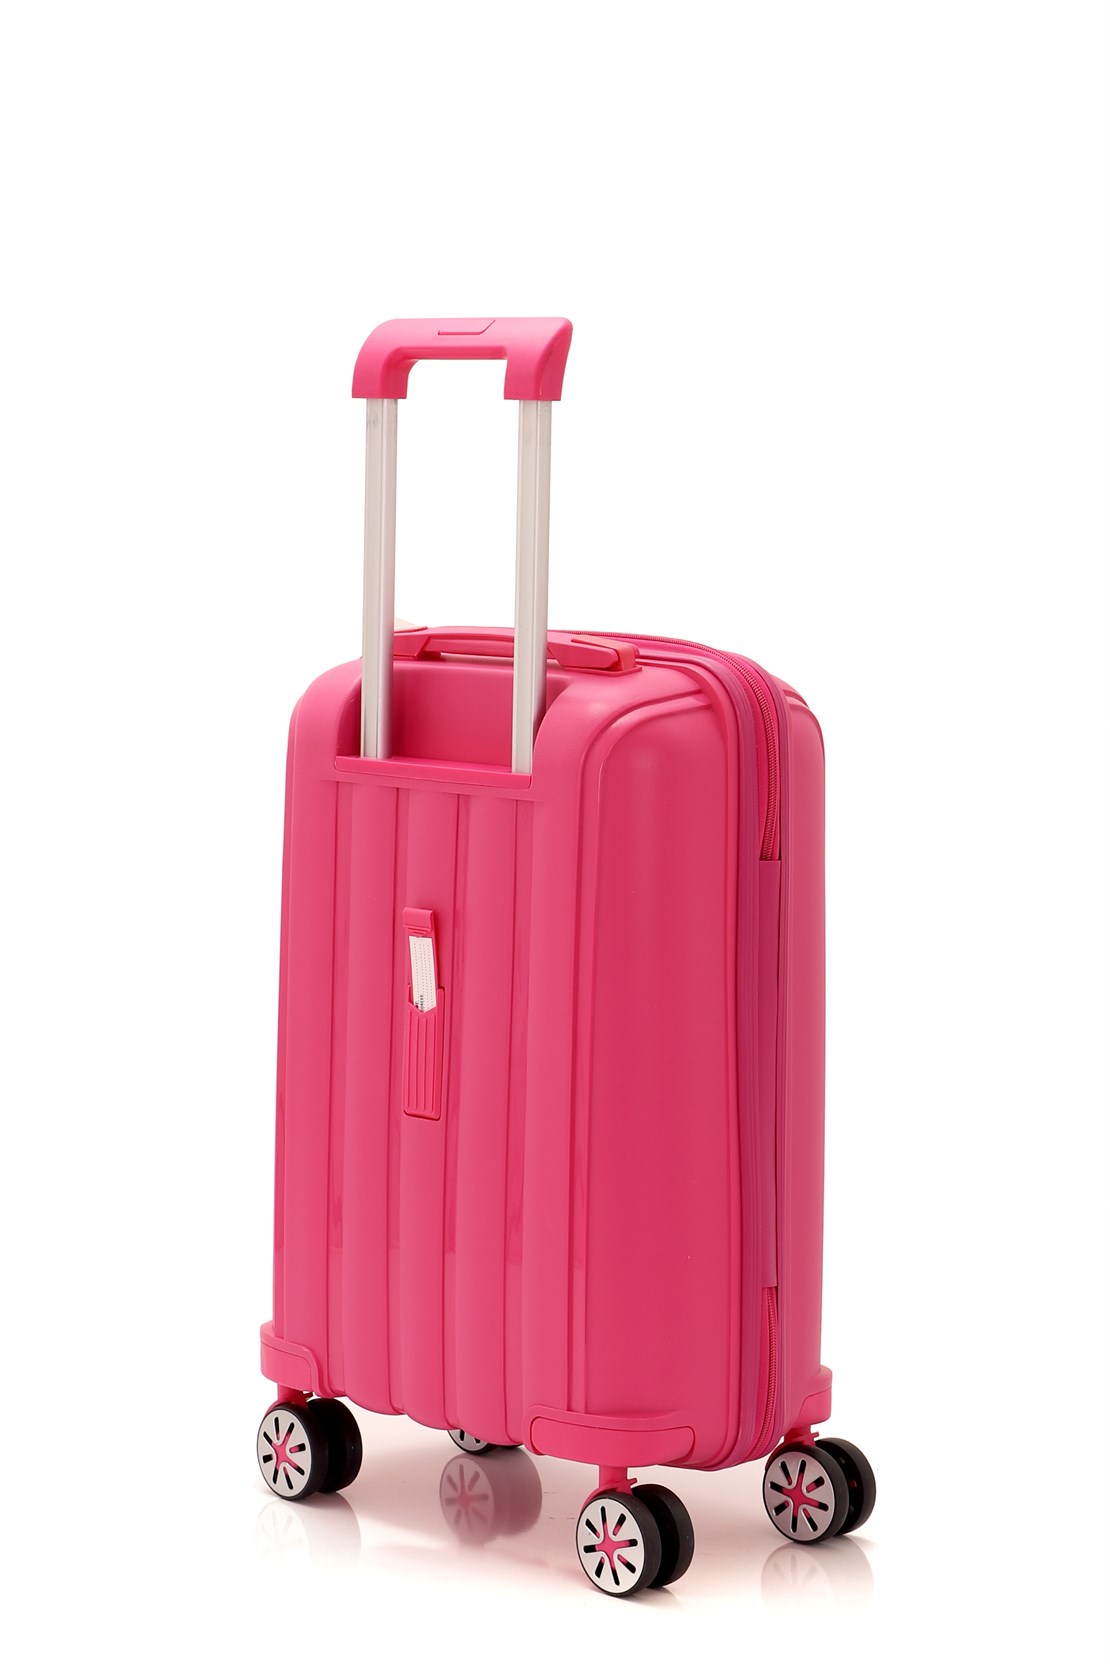 Маленький чемодан для ручьной клади из полипропилена MCS V305 S ! Для 8-10 кг! - 3